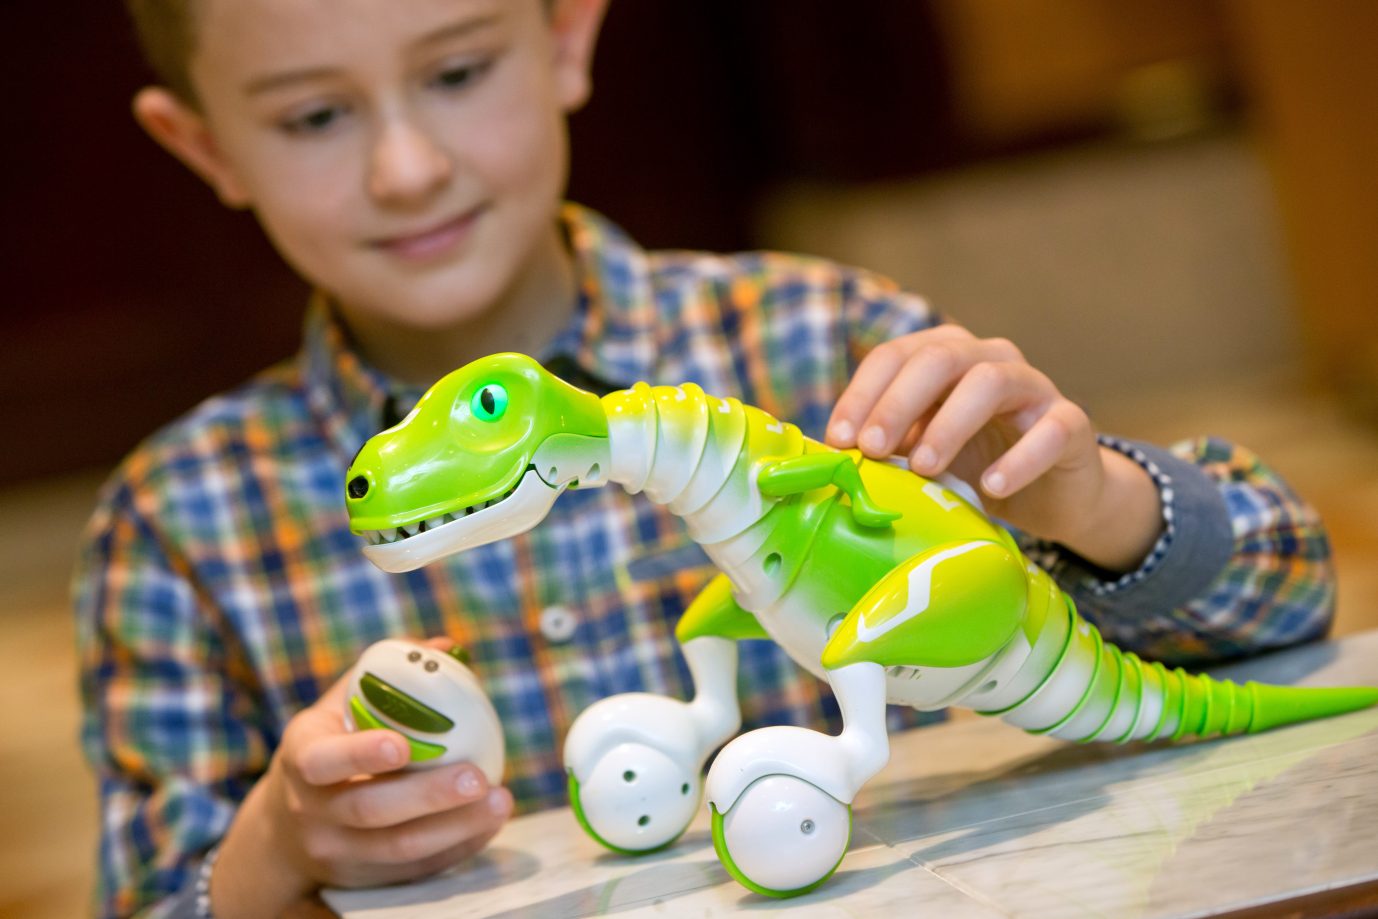 Junge spielt mit Dinosaurier: Spaniens Regierung setzt beim Spielzeug auf ein stereotypenfreies Geschlechterbild